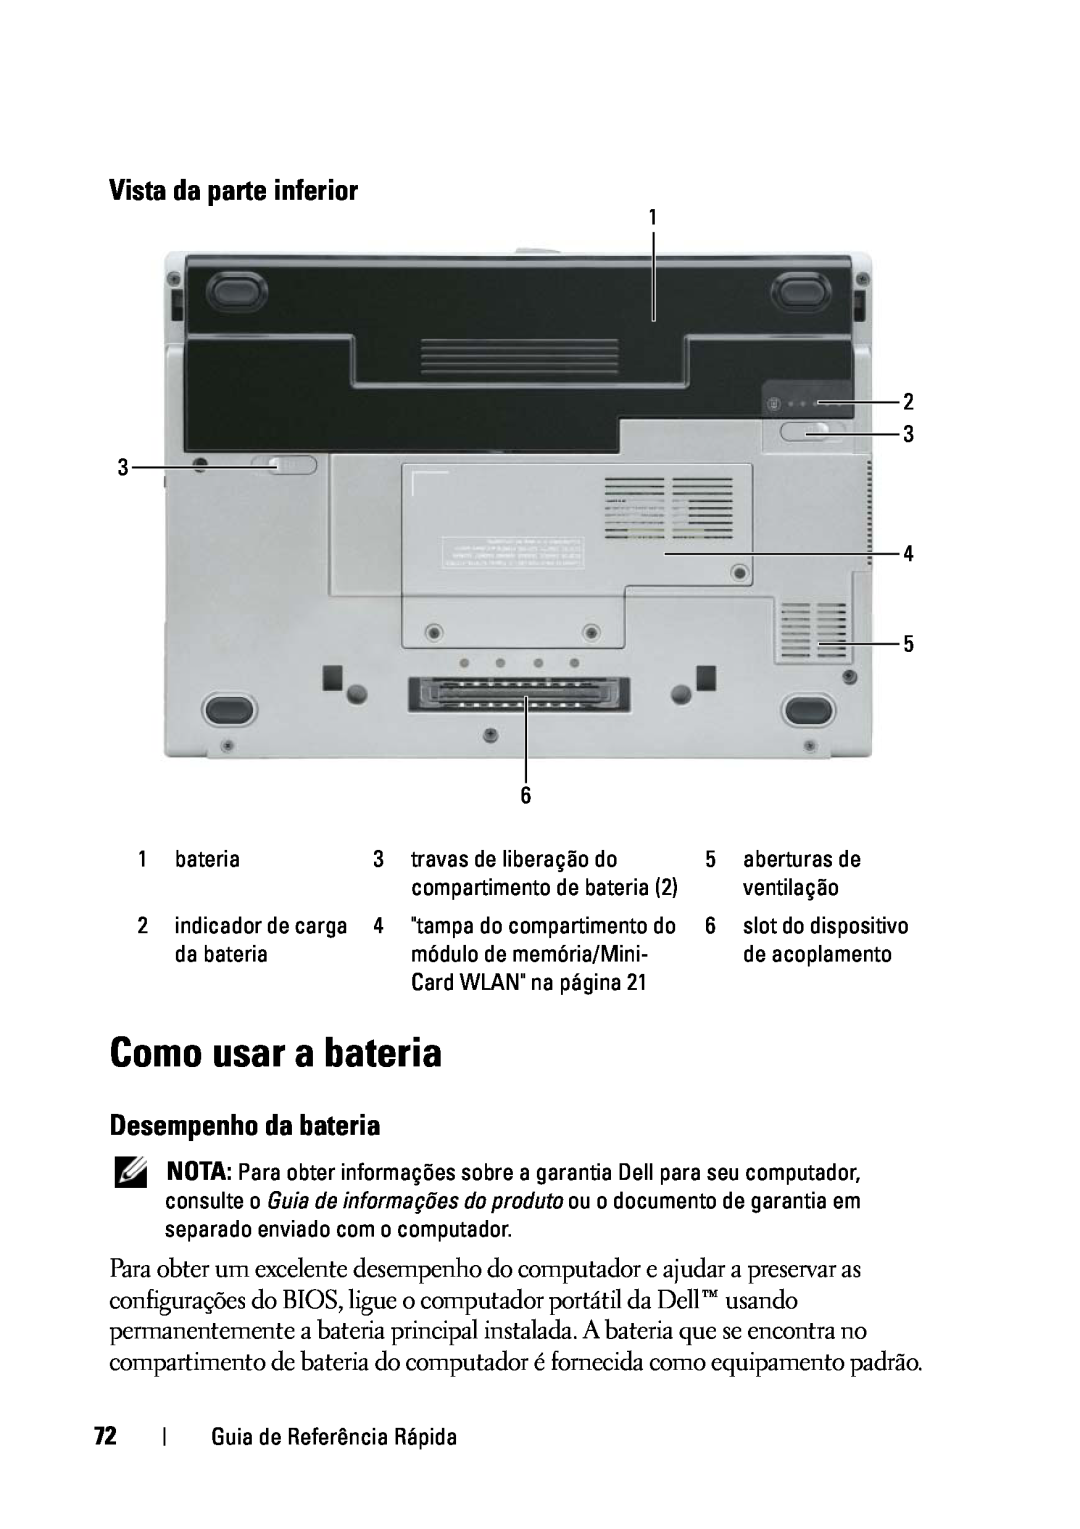 Dell D430 manual Como usar a bateria, Vista da parte inferior, Desempenho da bateria 